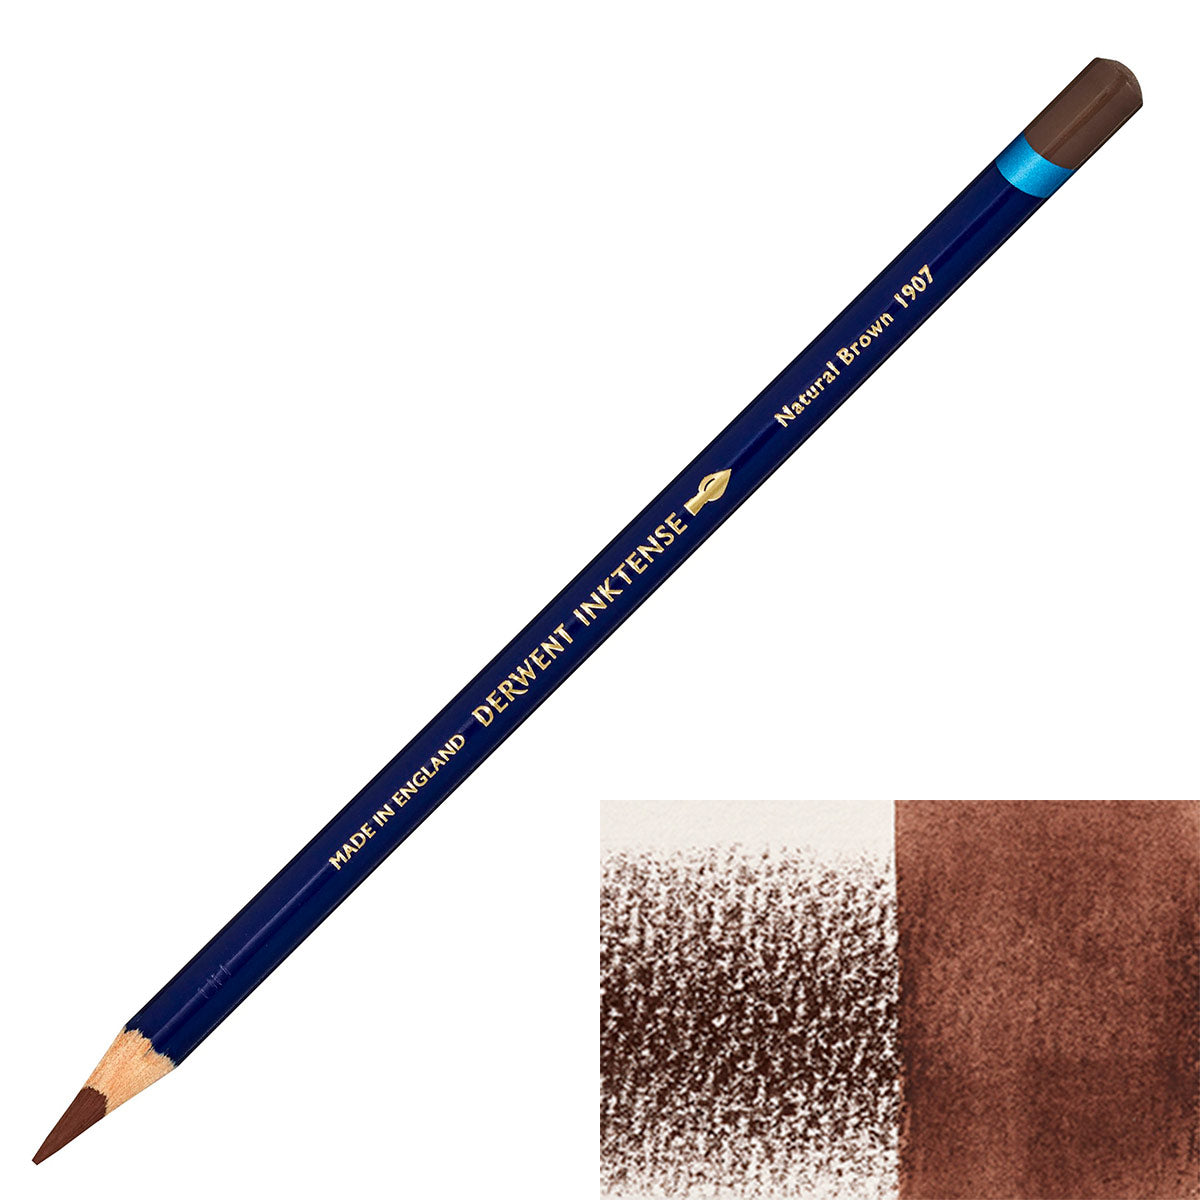 Derwent - Inktense Pencil - Natural Brown 1907